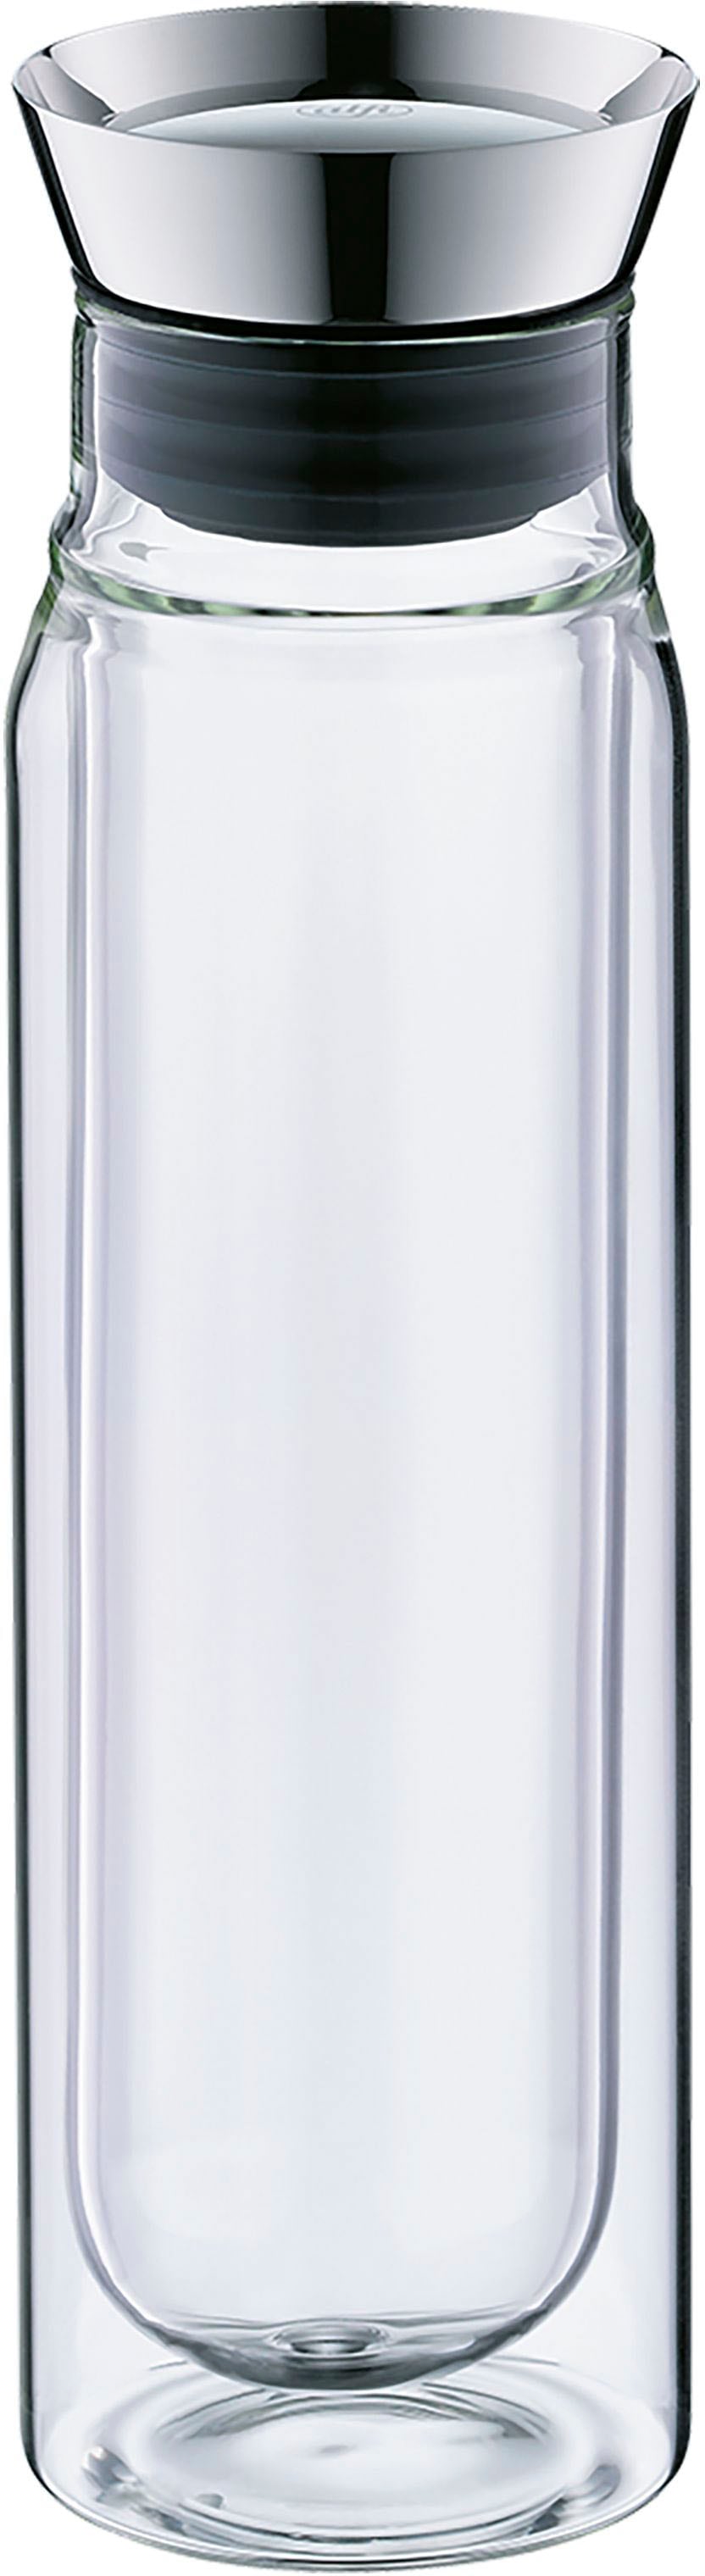 Alfi Wasserkaraffe »FLOWMOTION«, 750 ml, handgefertigt und mundgeblasen